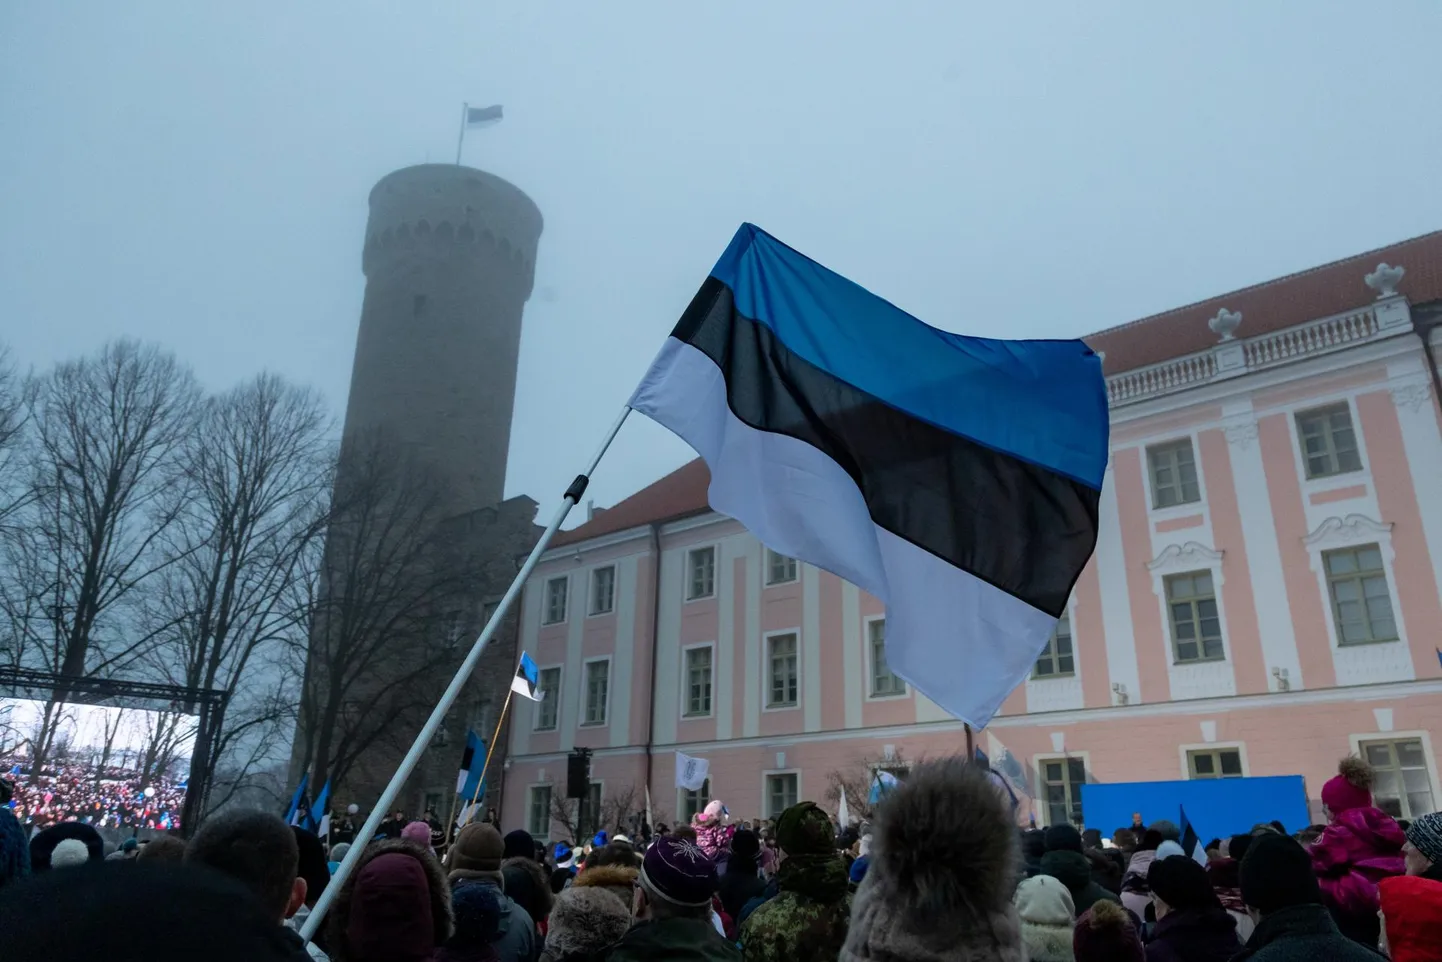 Eesti riik ei sündinud ainult vaprusest, vaid riiklikust tahtest ja tarkusestki. Oma riigi saamislugu tasub meenutada, kui on algamas järjekordsed läbirääkimised valitsuse moodustamiseks.